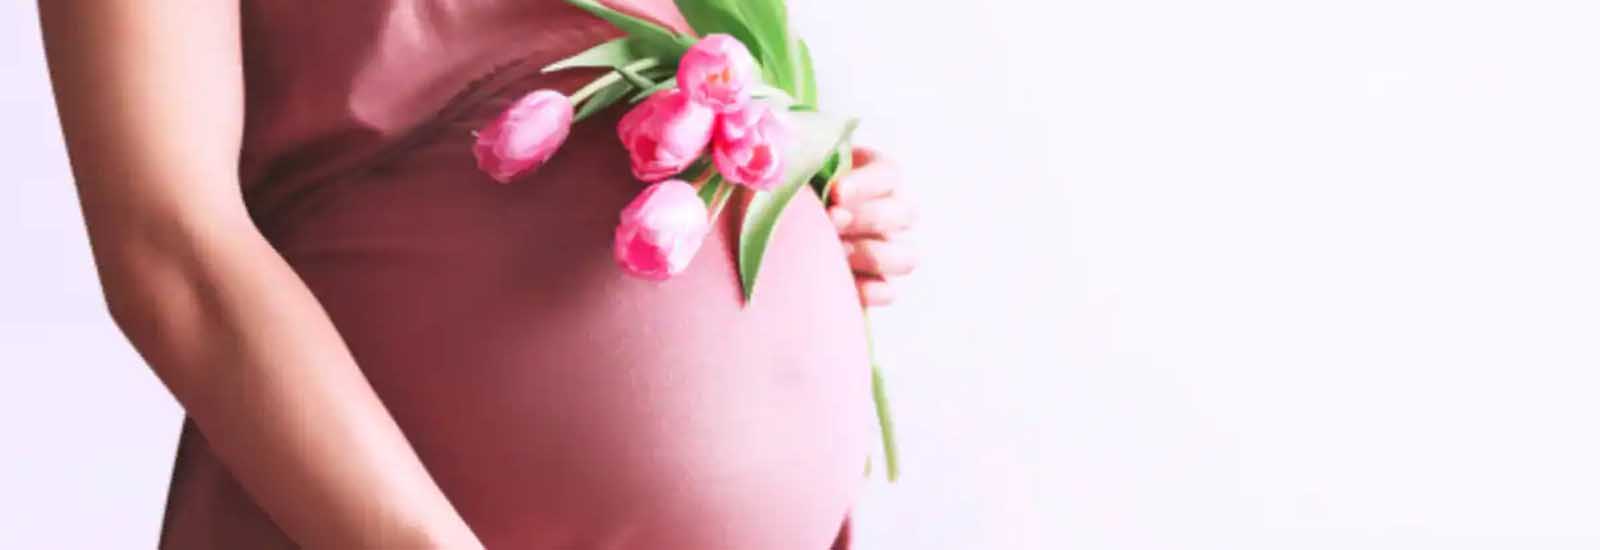 गर्भवती महिलाएं ज्यादा खाएंगी अंडे तो हो सकते हैं ये गंभीर नुकसान